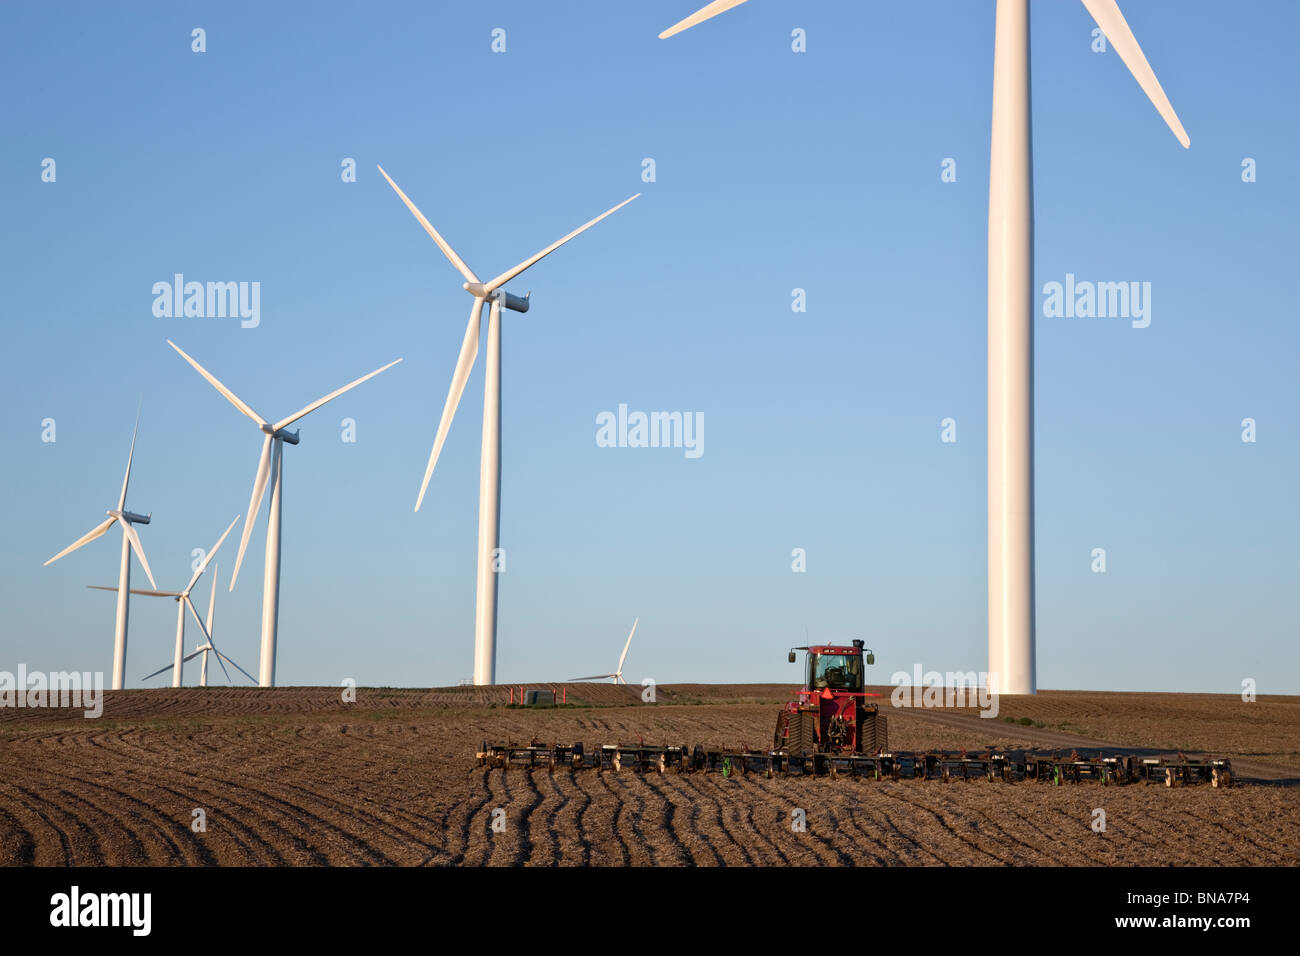 Le tracteur tirant harrow, champ de blé, wind farm Banque D'Images